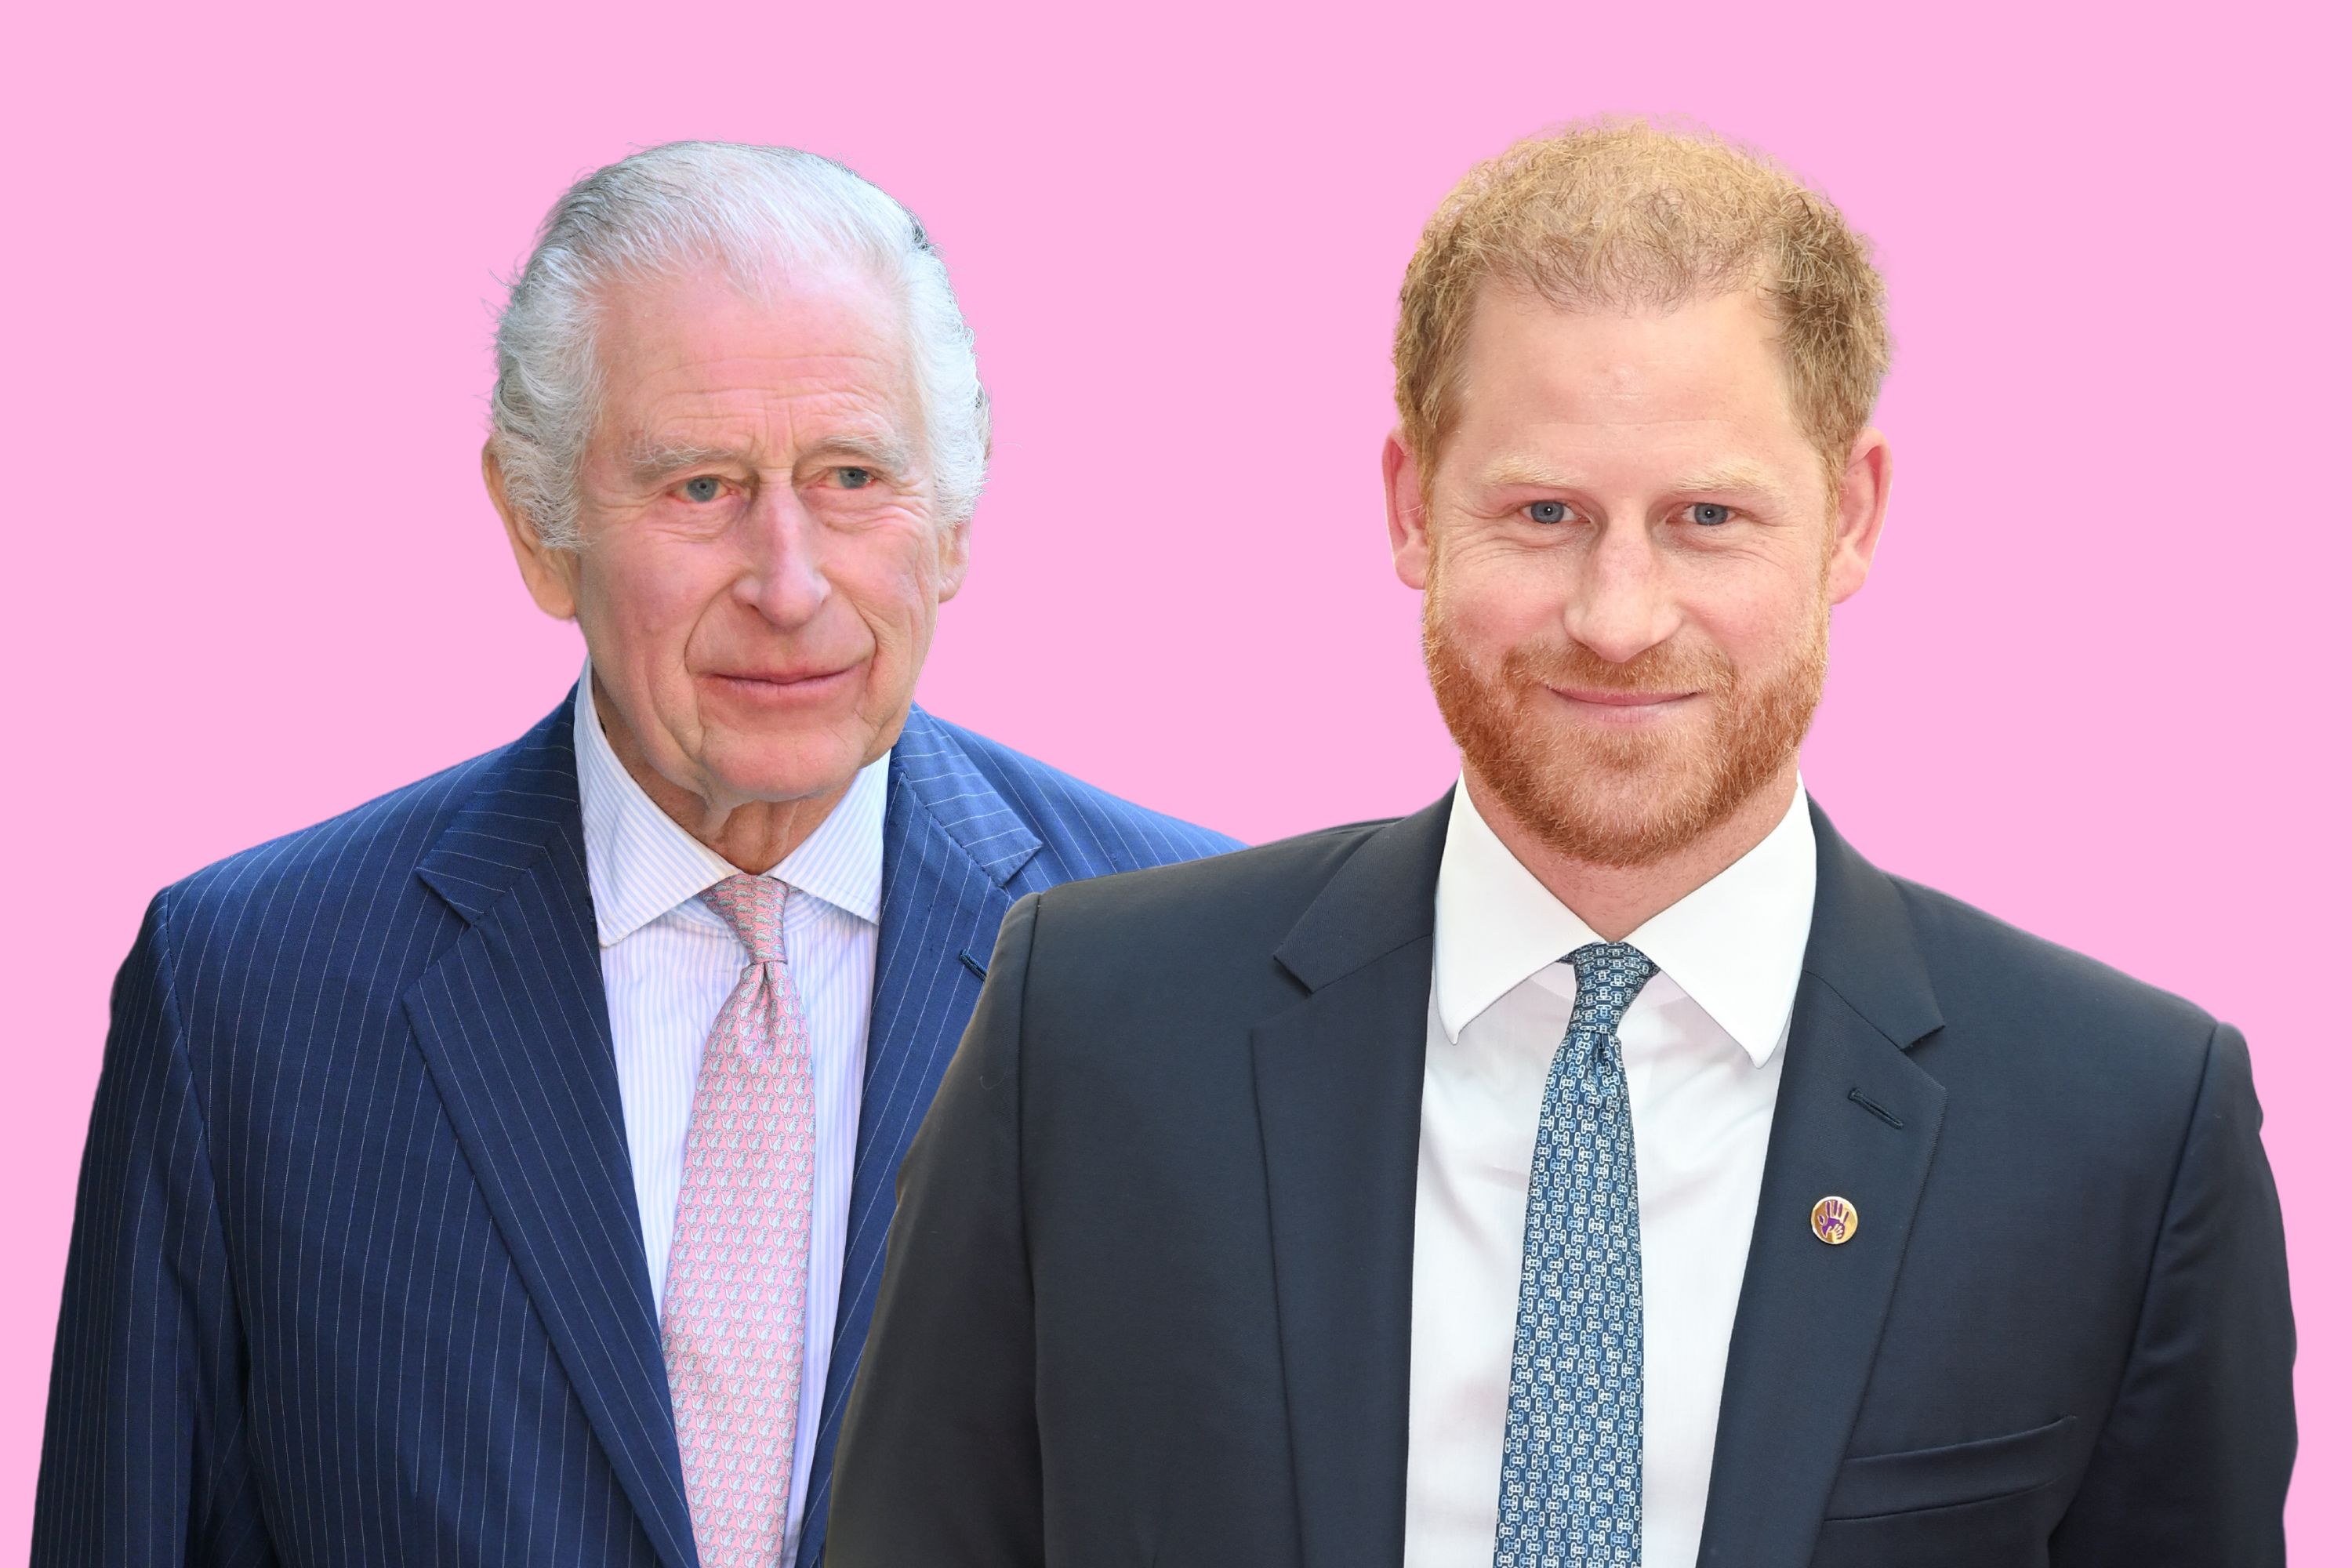 Le lien entre le prince Harry et le roi Charles pourrait être plus fort qu’on ne le pensait